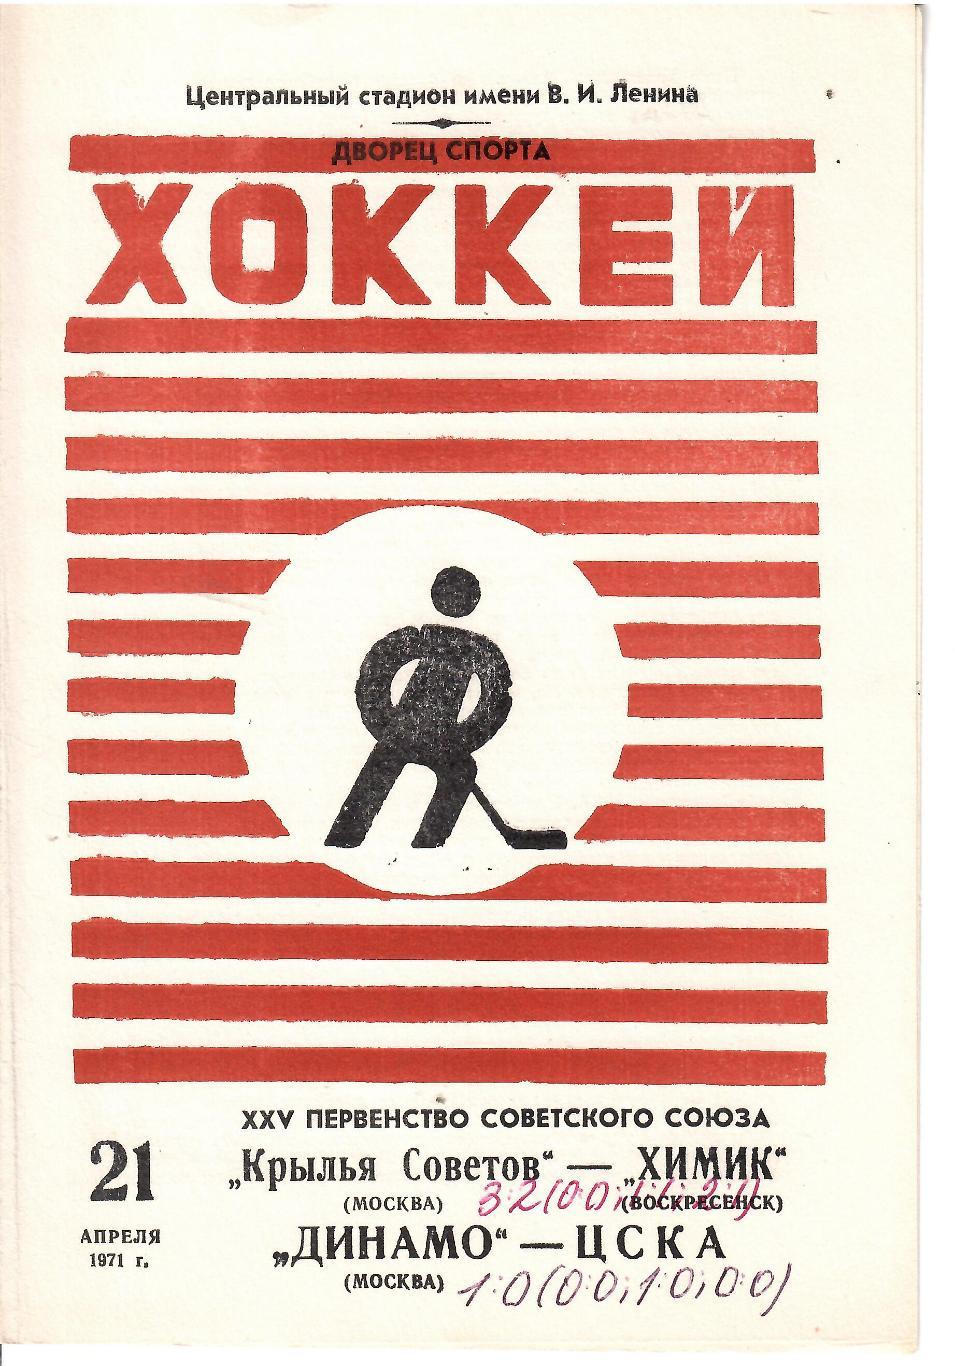 1971 Хоккей Крылья Советов - Химик - Динамо Москва - ЦСКА